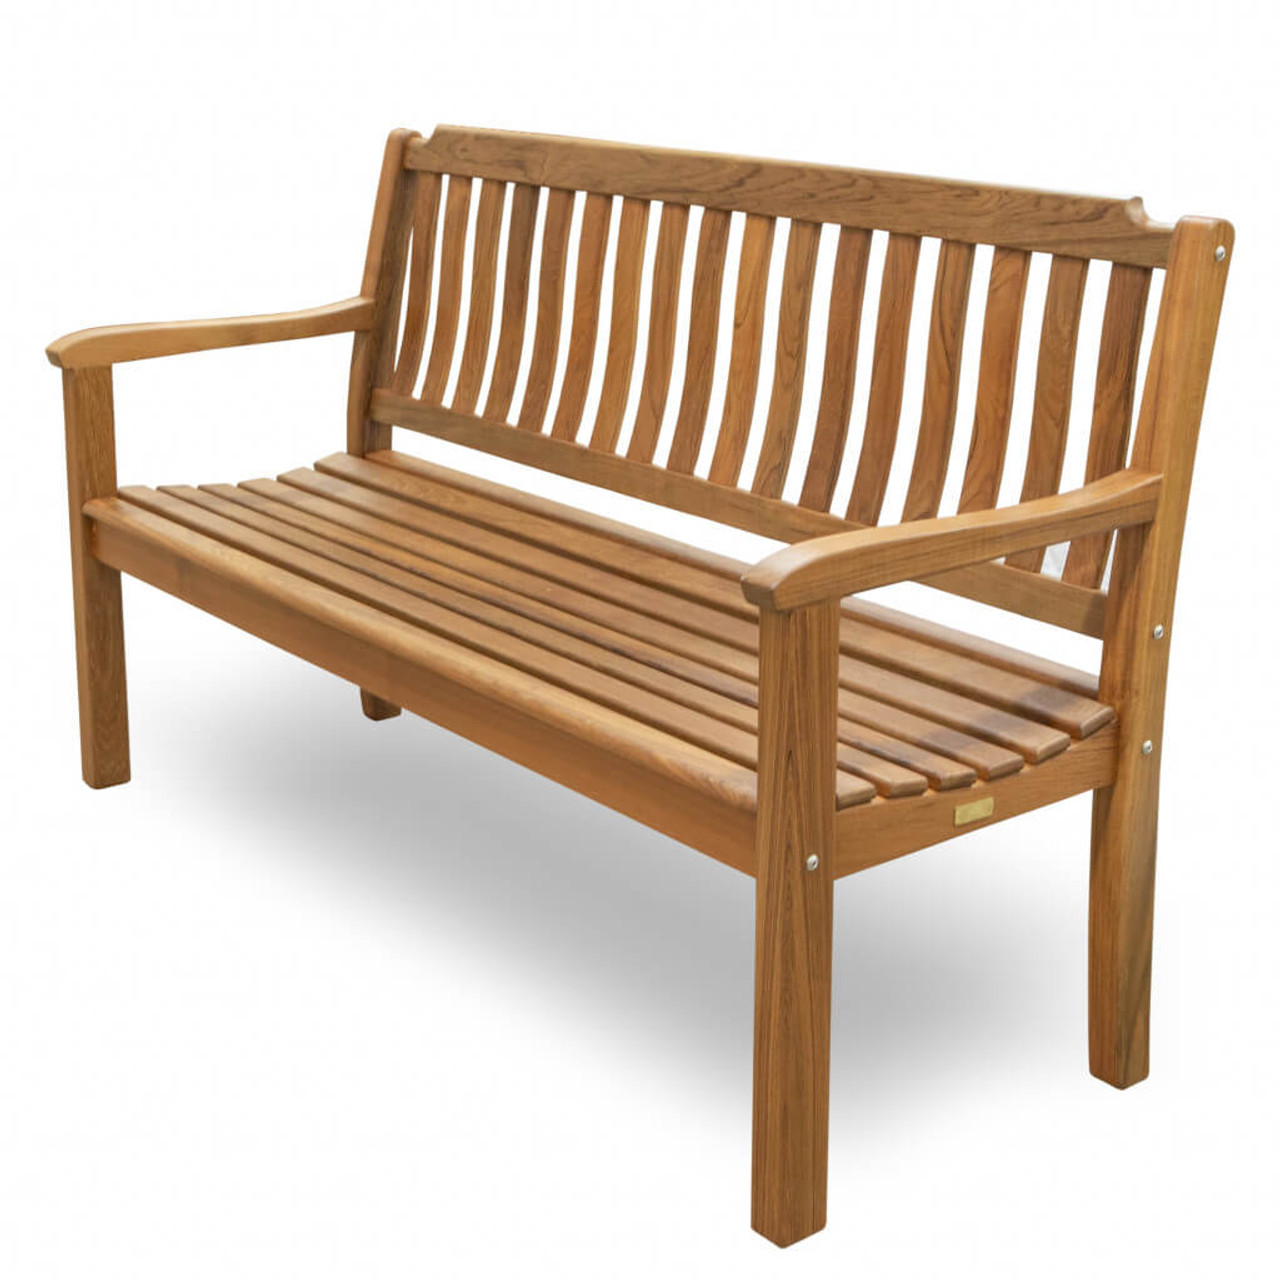 60" Teak Solid Wood Garden Bench